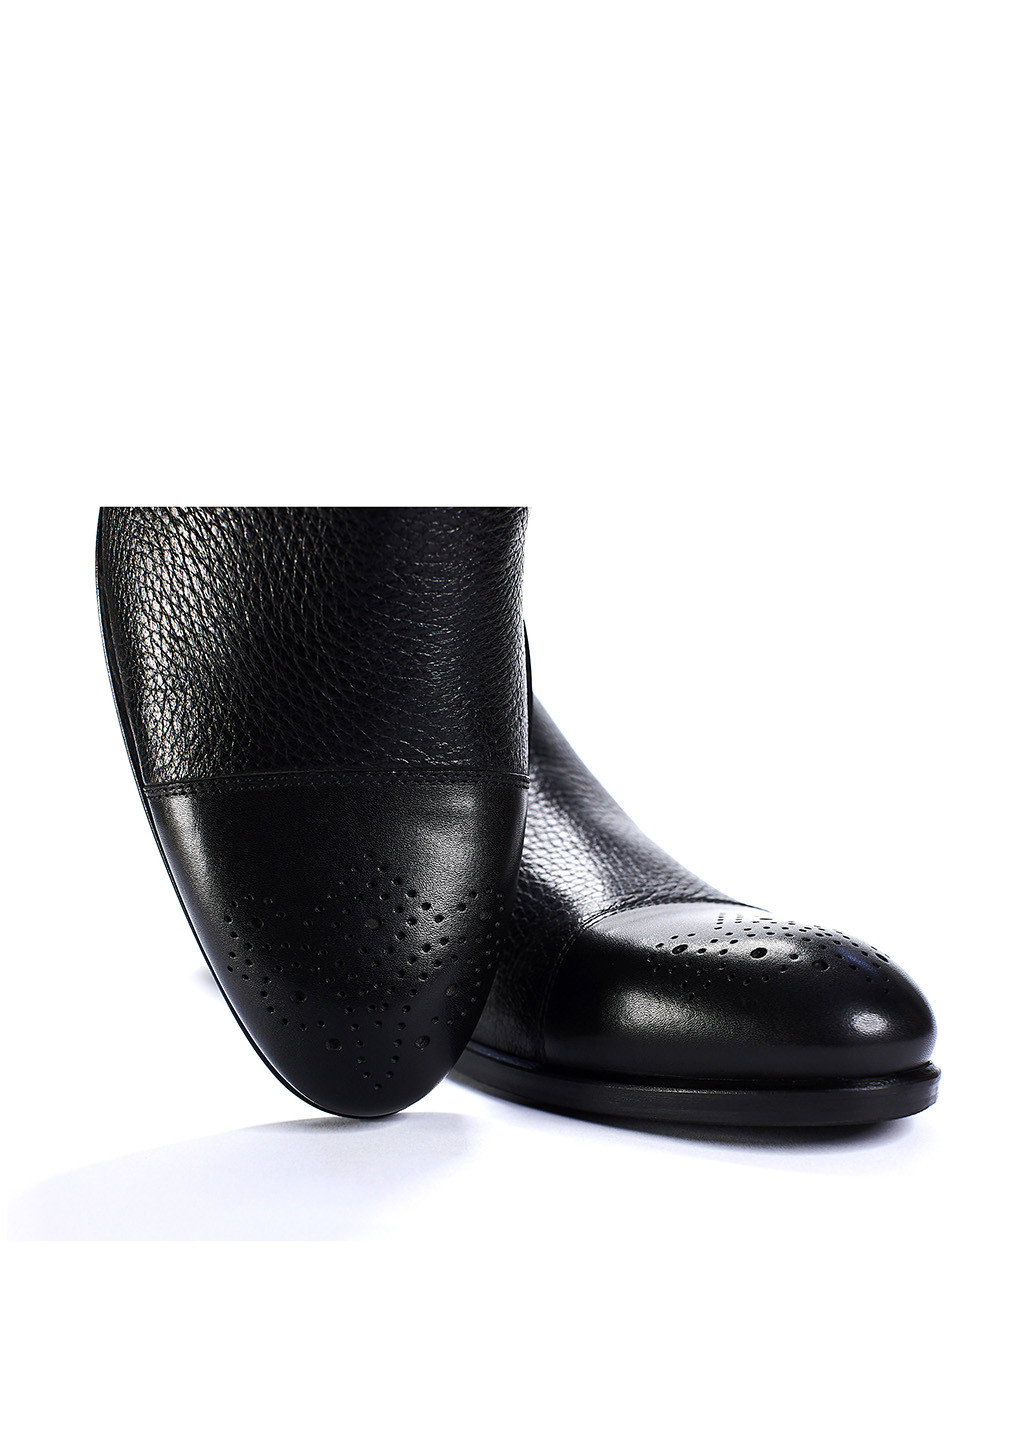 Черные классические туфли Giampieronicola на резинке